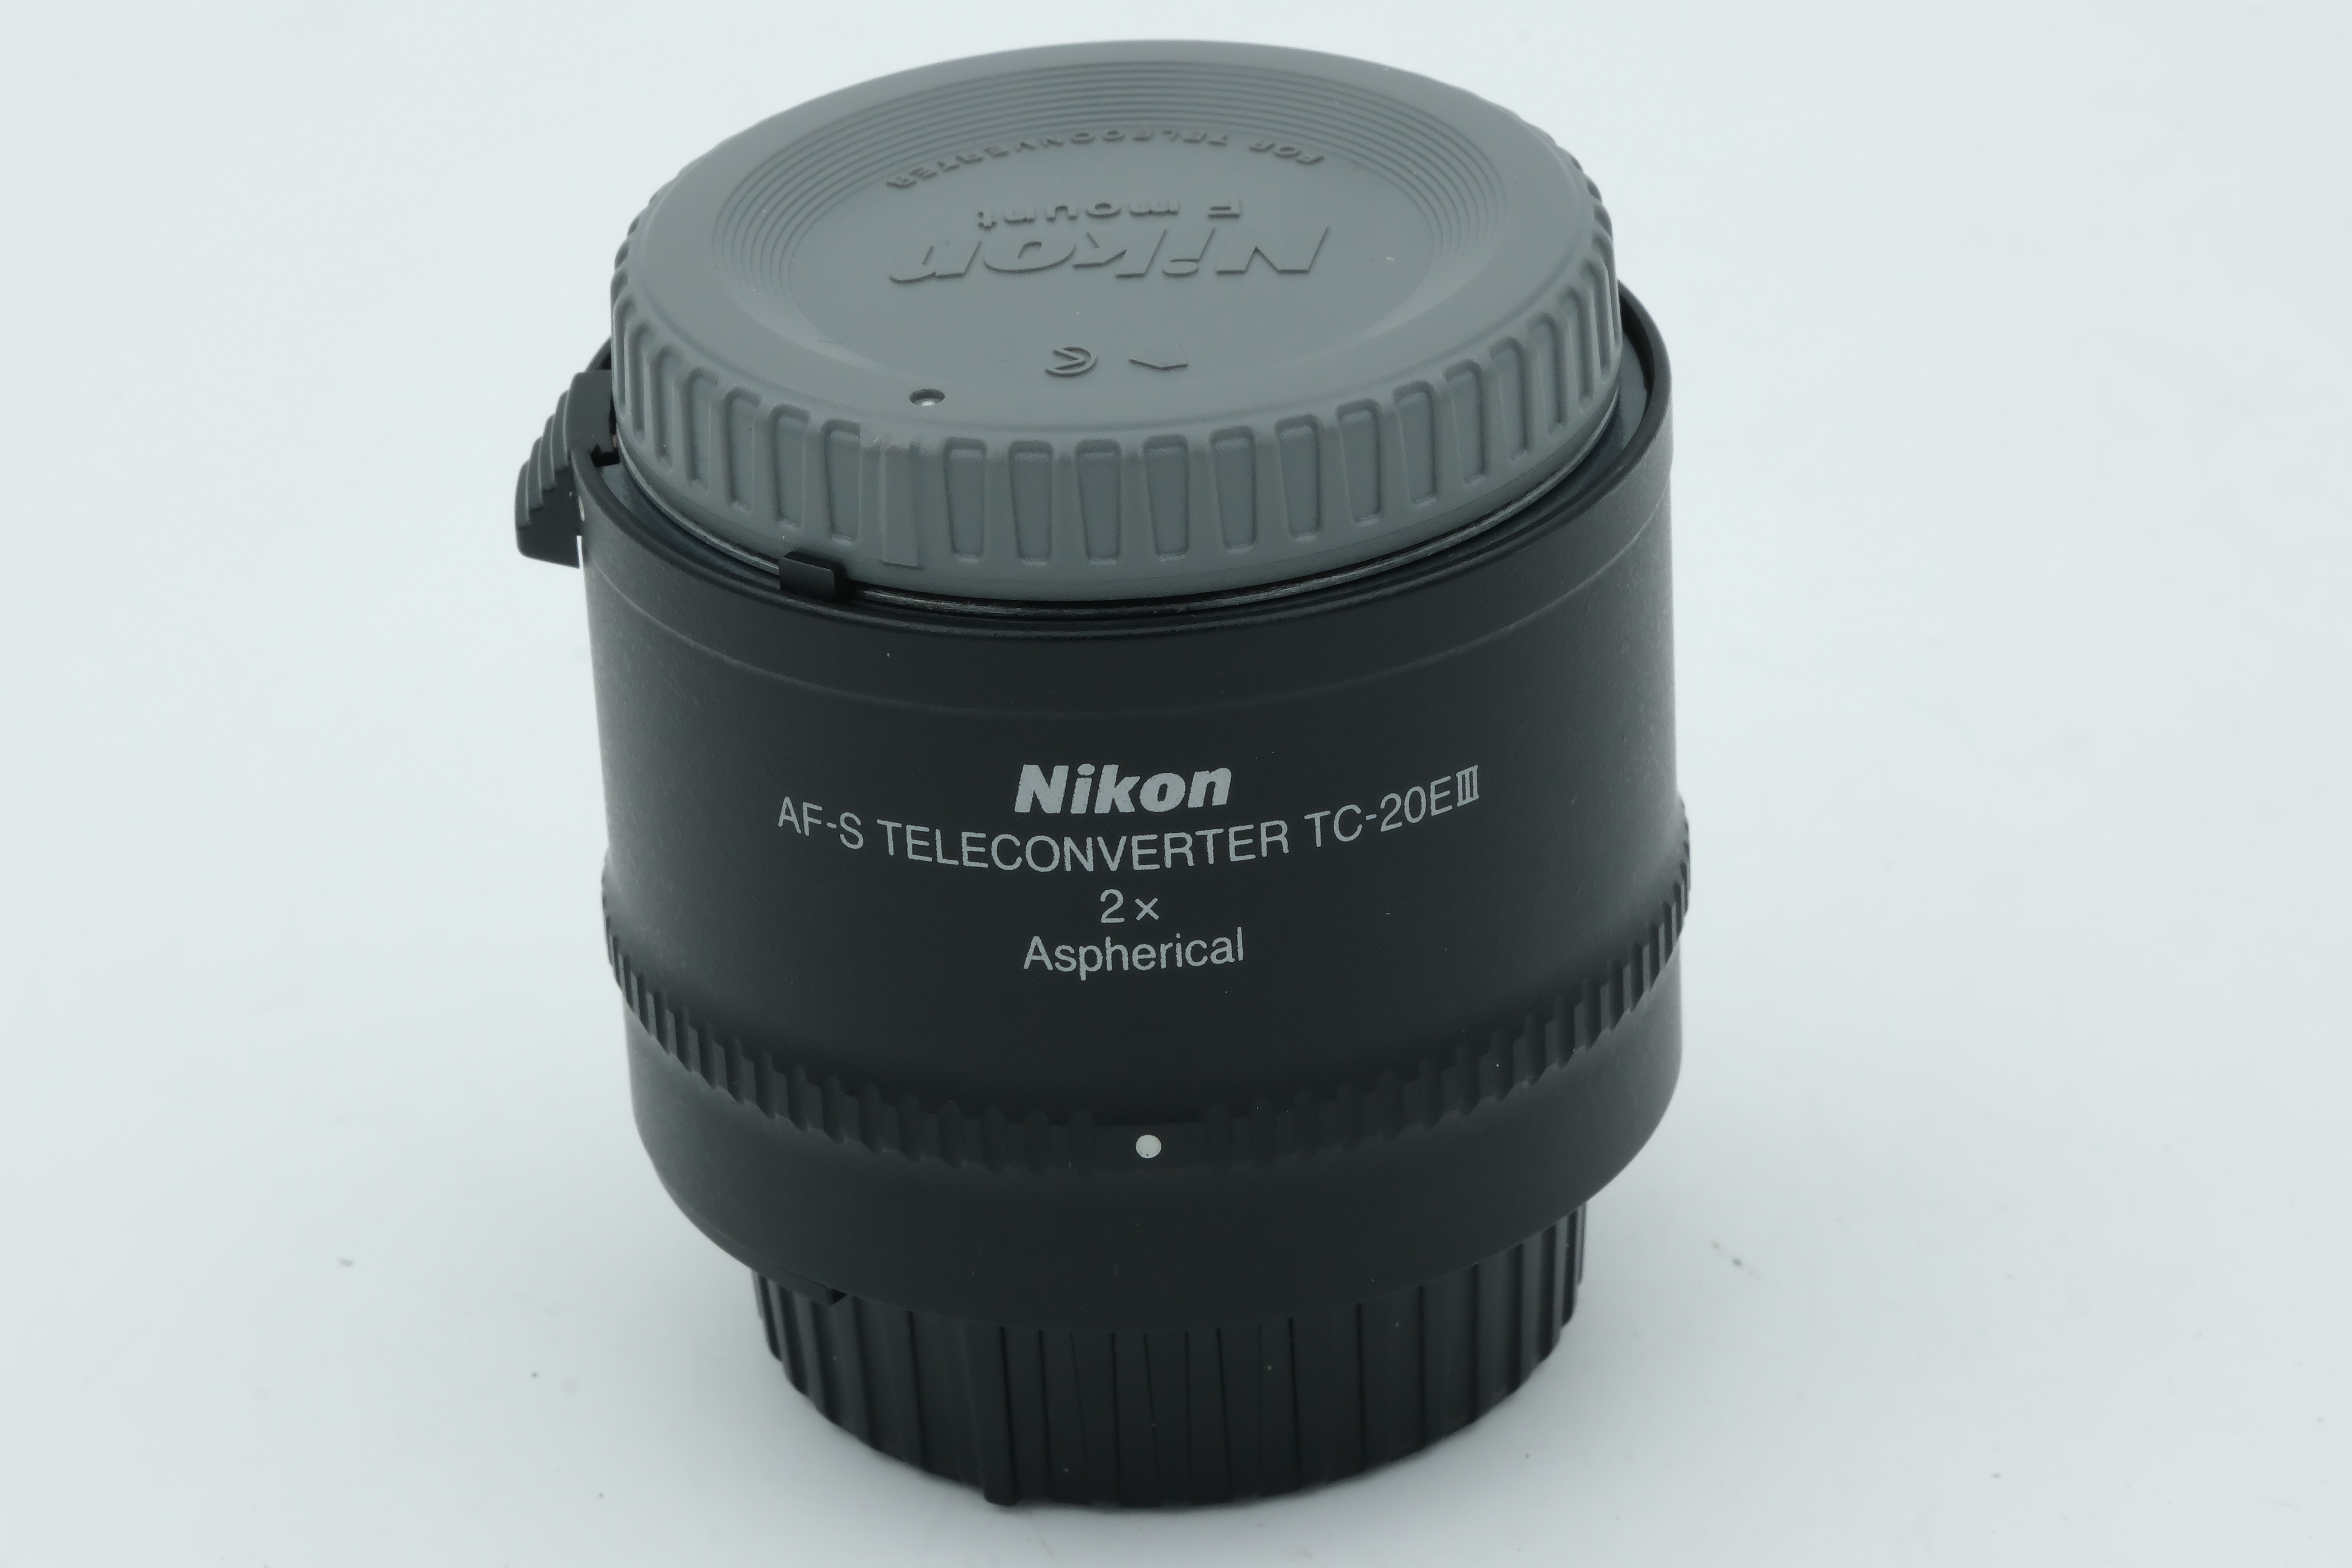 Nikon AF-S Teleconverter TC-20EIII 2x